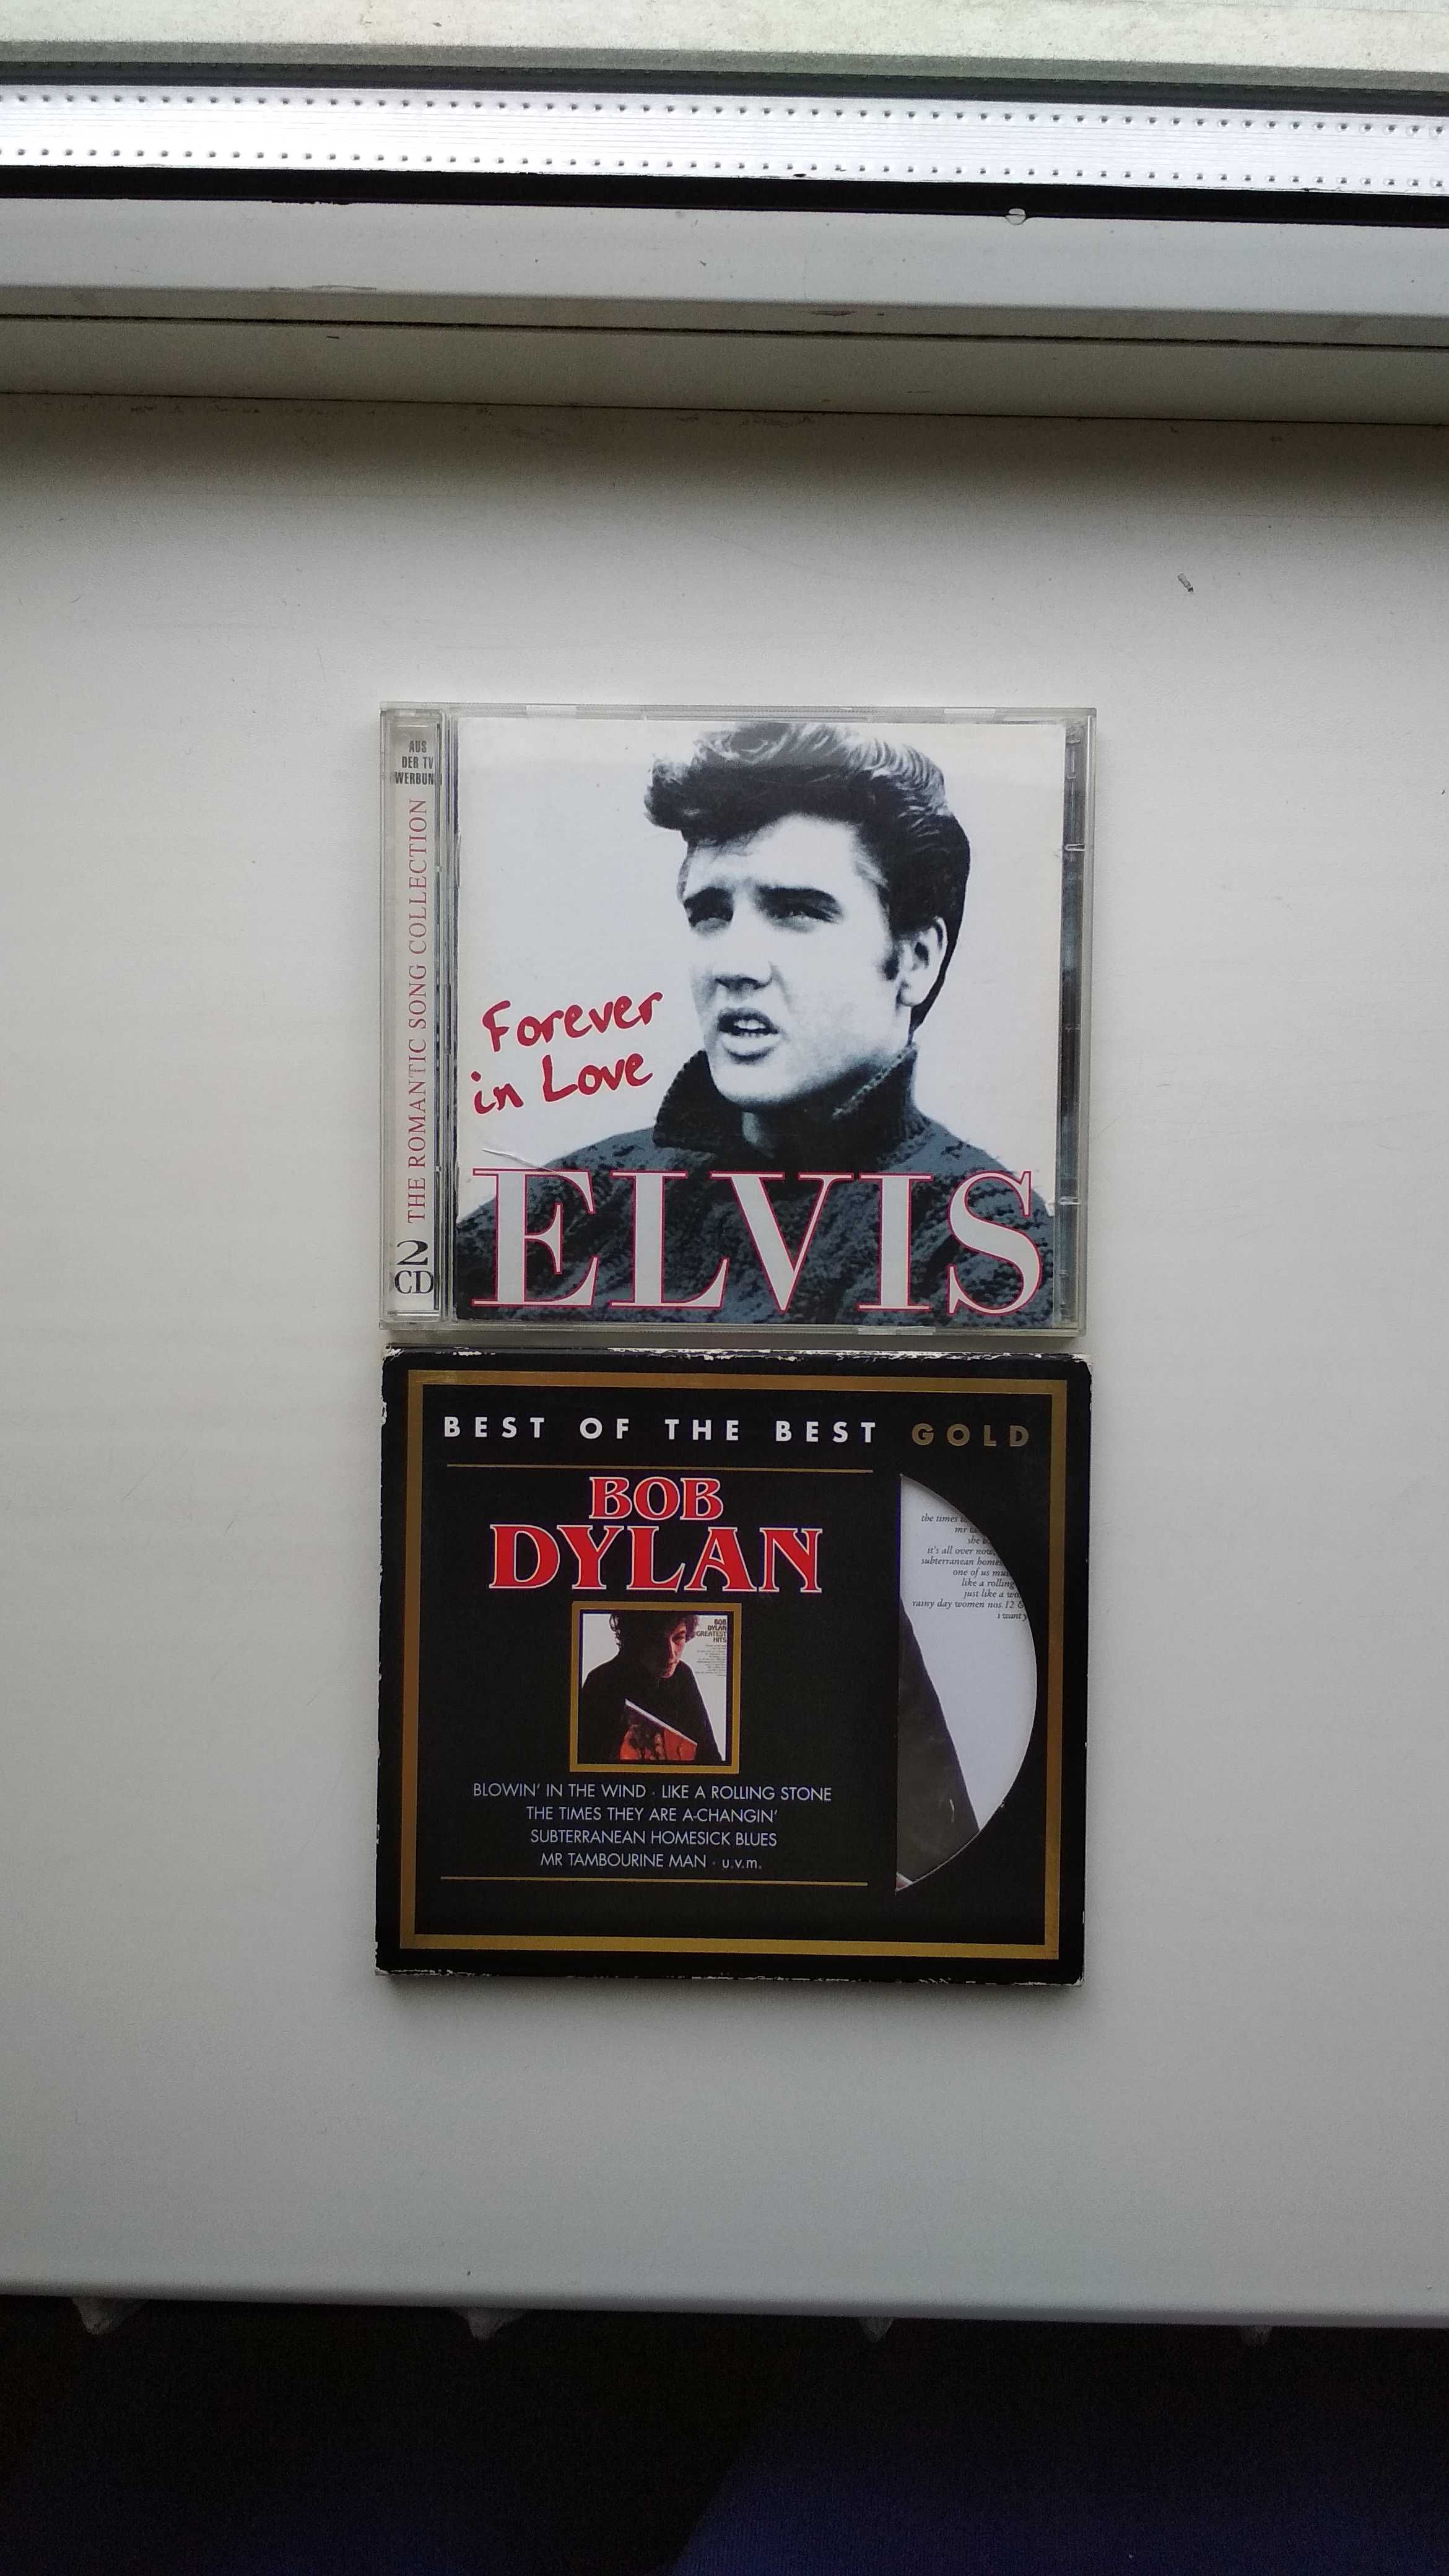 Elvis Presley Forever in Love 2CD Bob Dylan Best of Best Gold limited